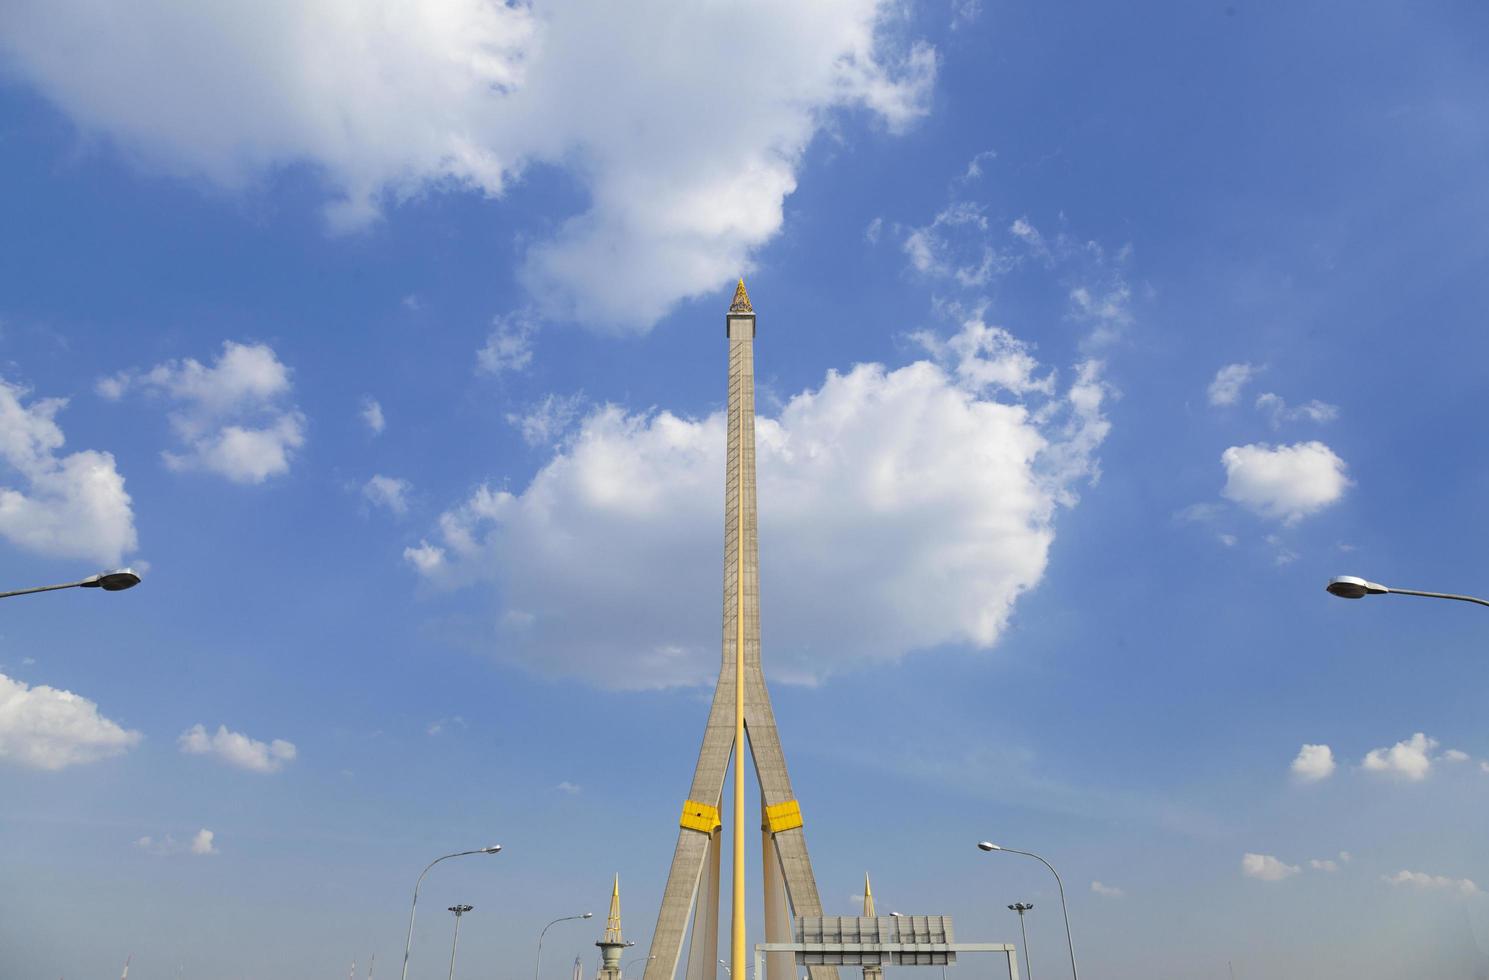 Rama VIII Bridge in Bangkok, Thailand photo